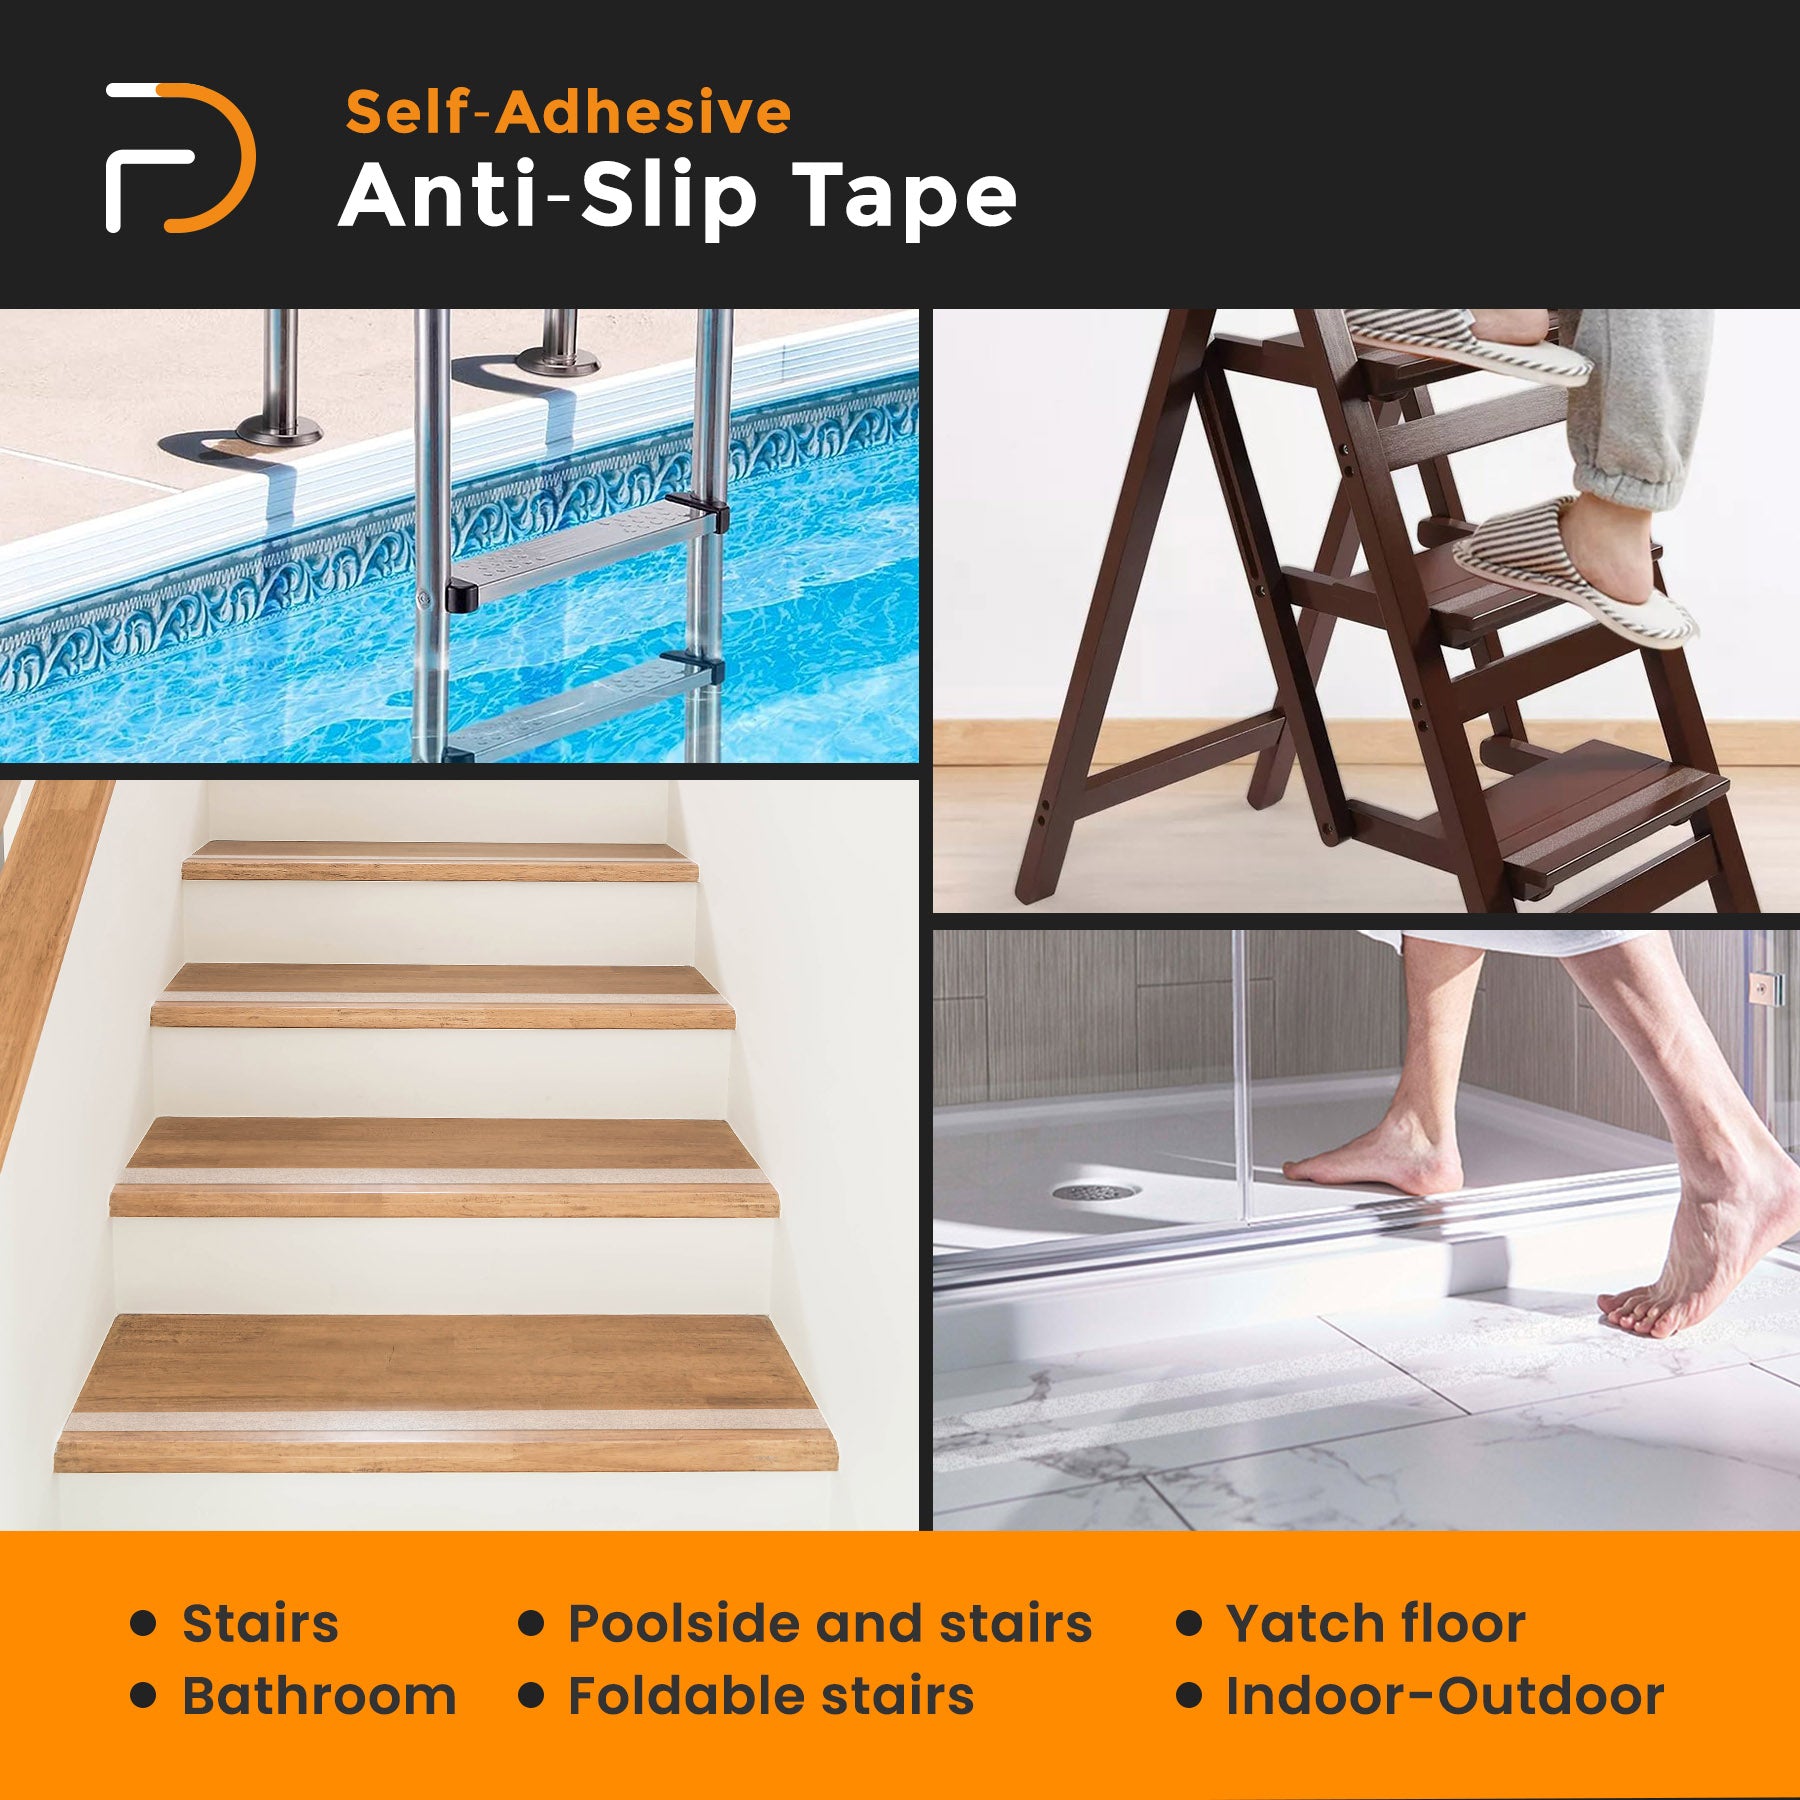 Furndiy Anti Slip Tape, Grip Tape for Stairs, Bathroom, Ladders, Pool, Carpet